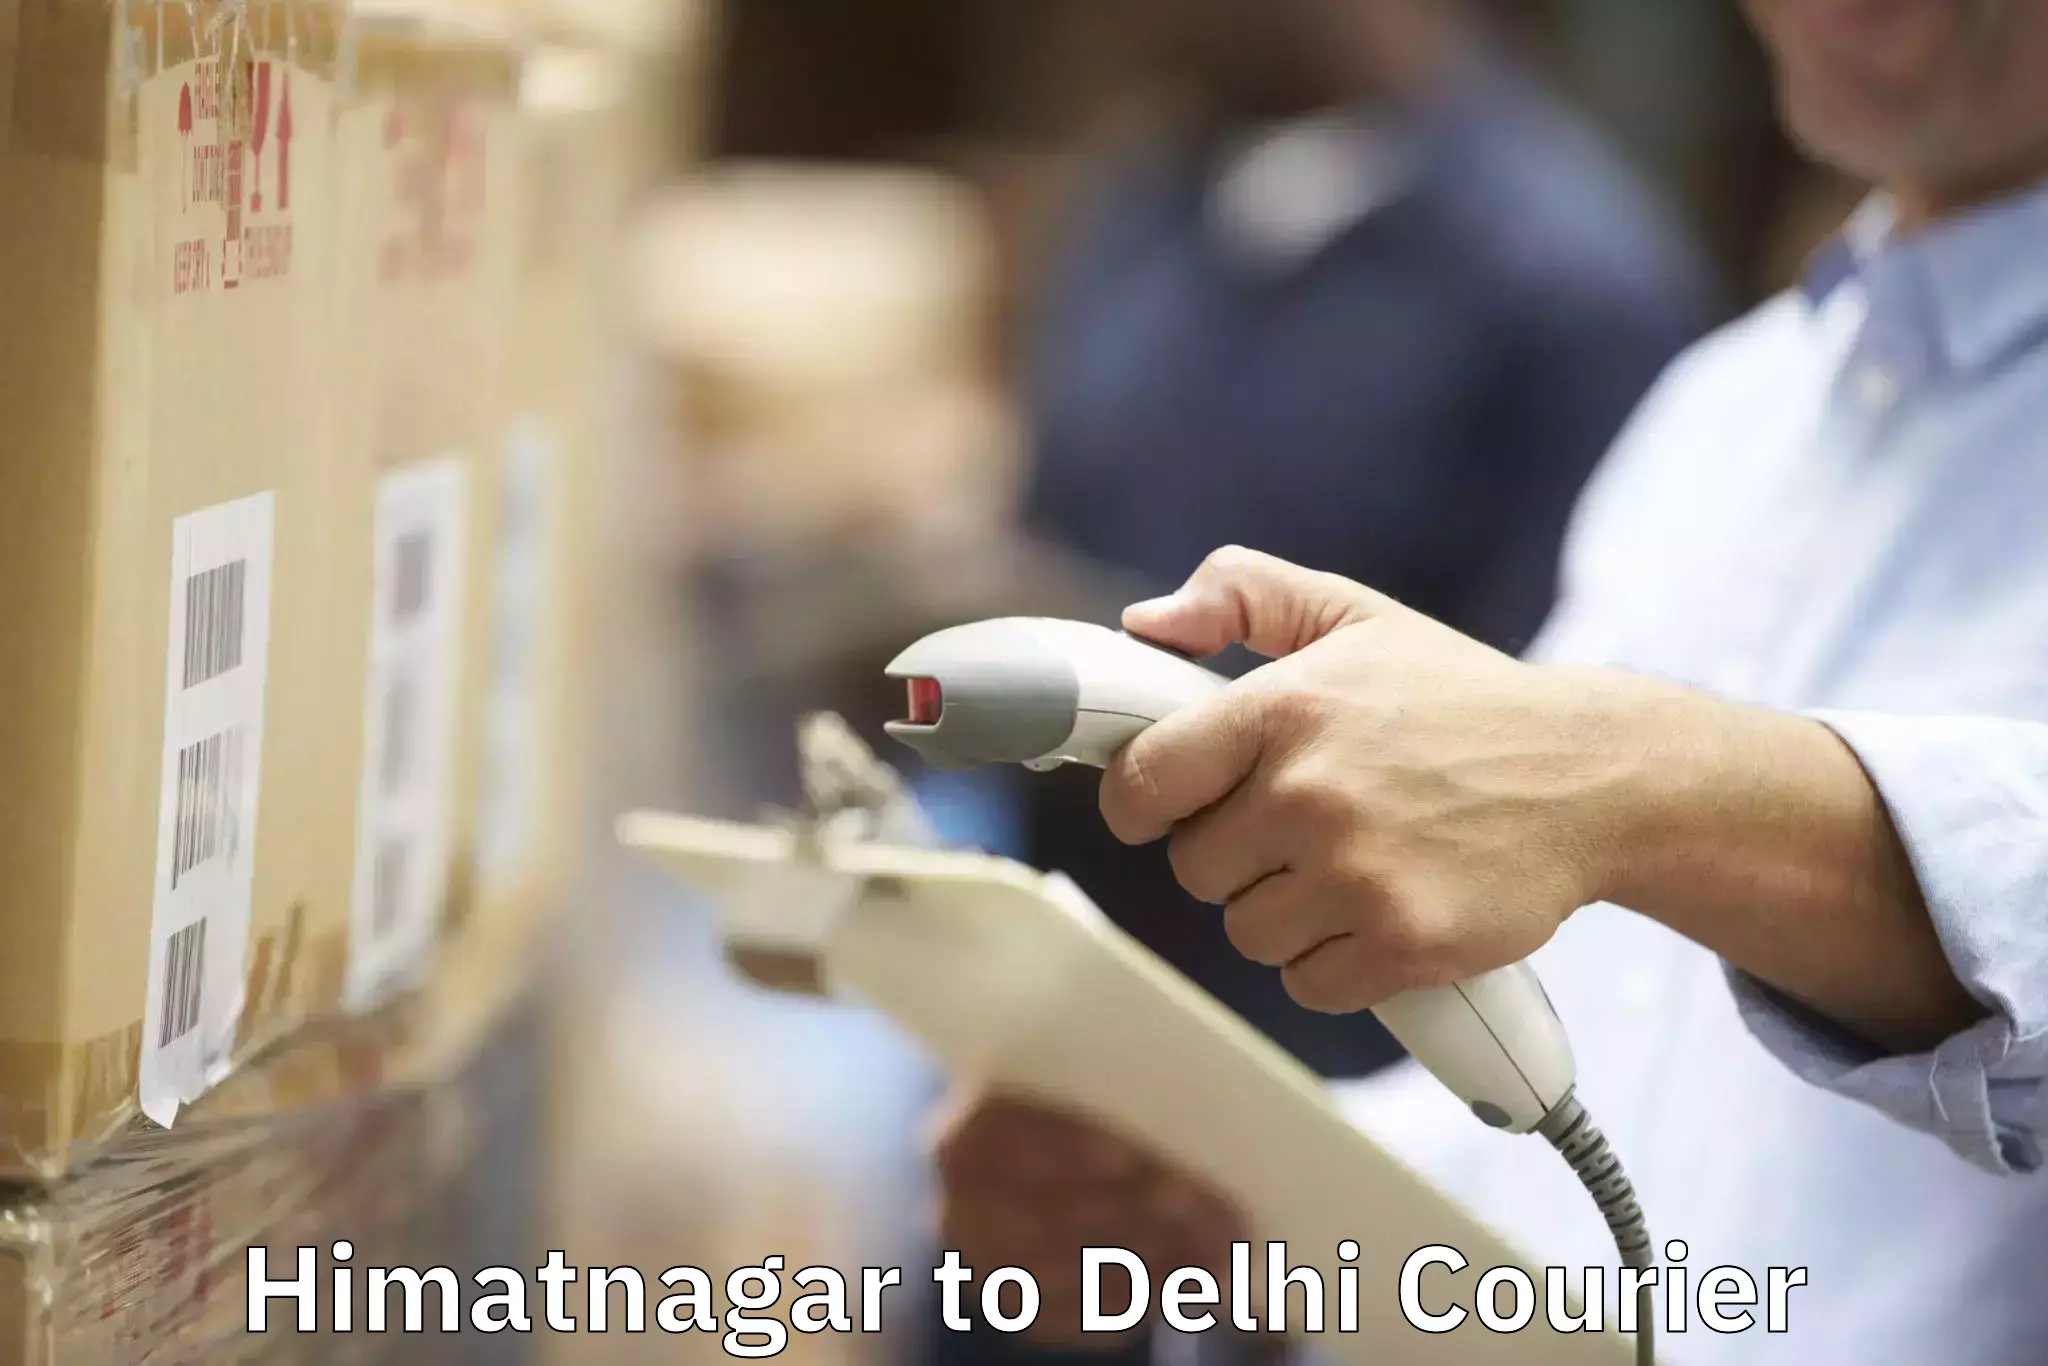 Furniture relocation experts Himatnagar to IIT Delhi